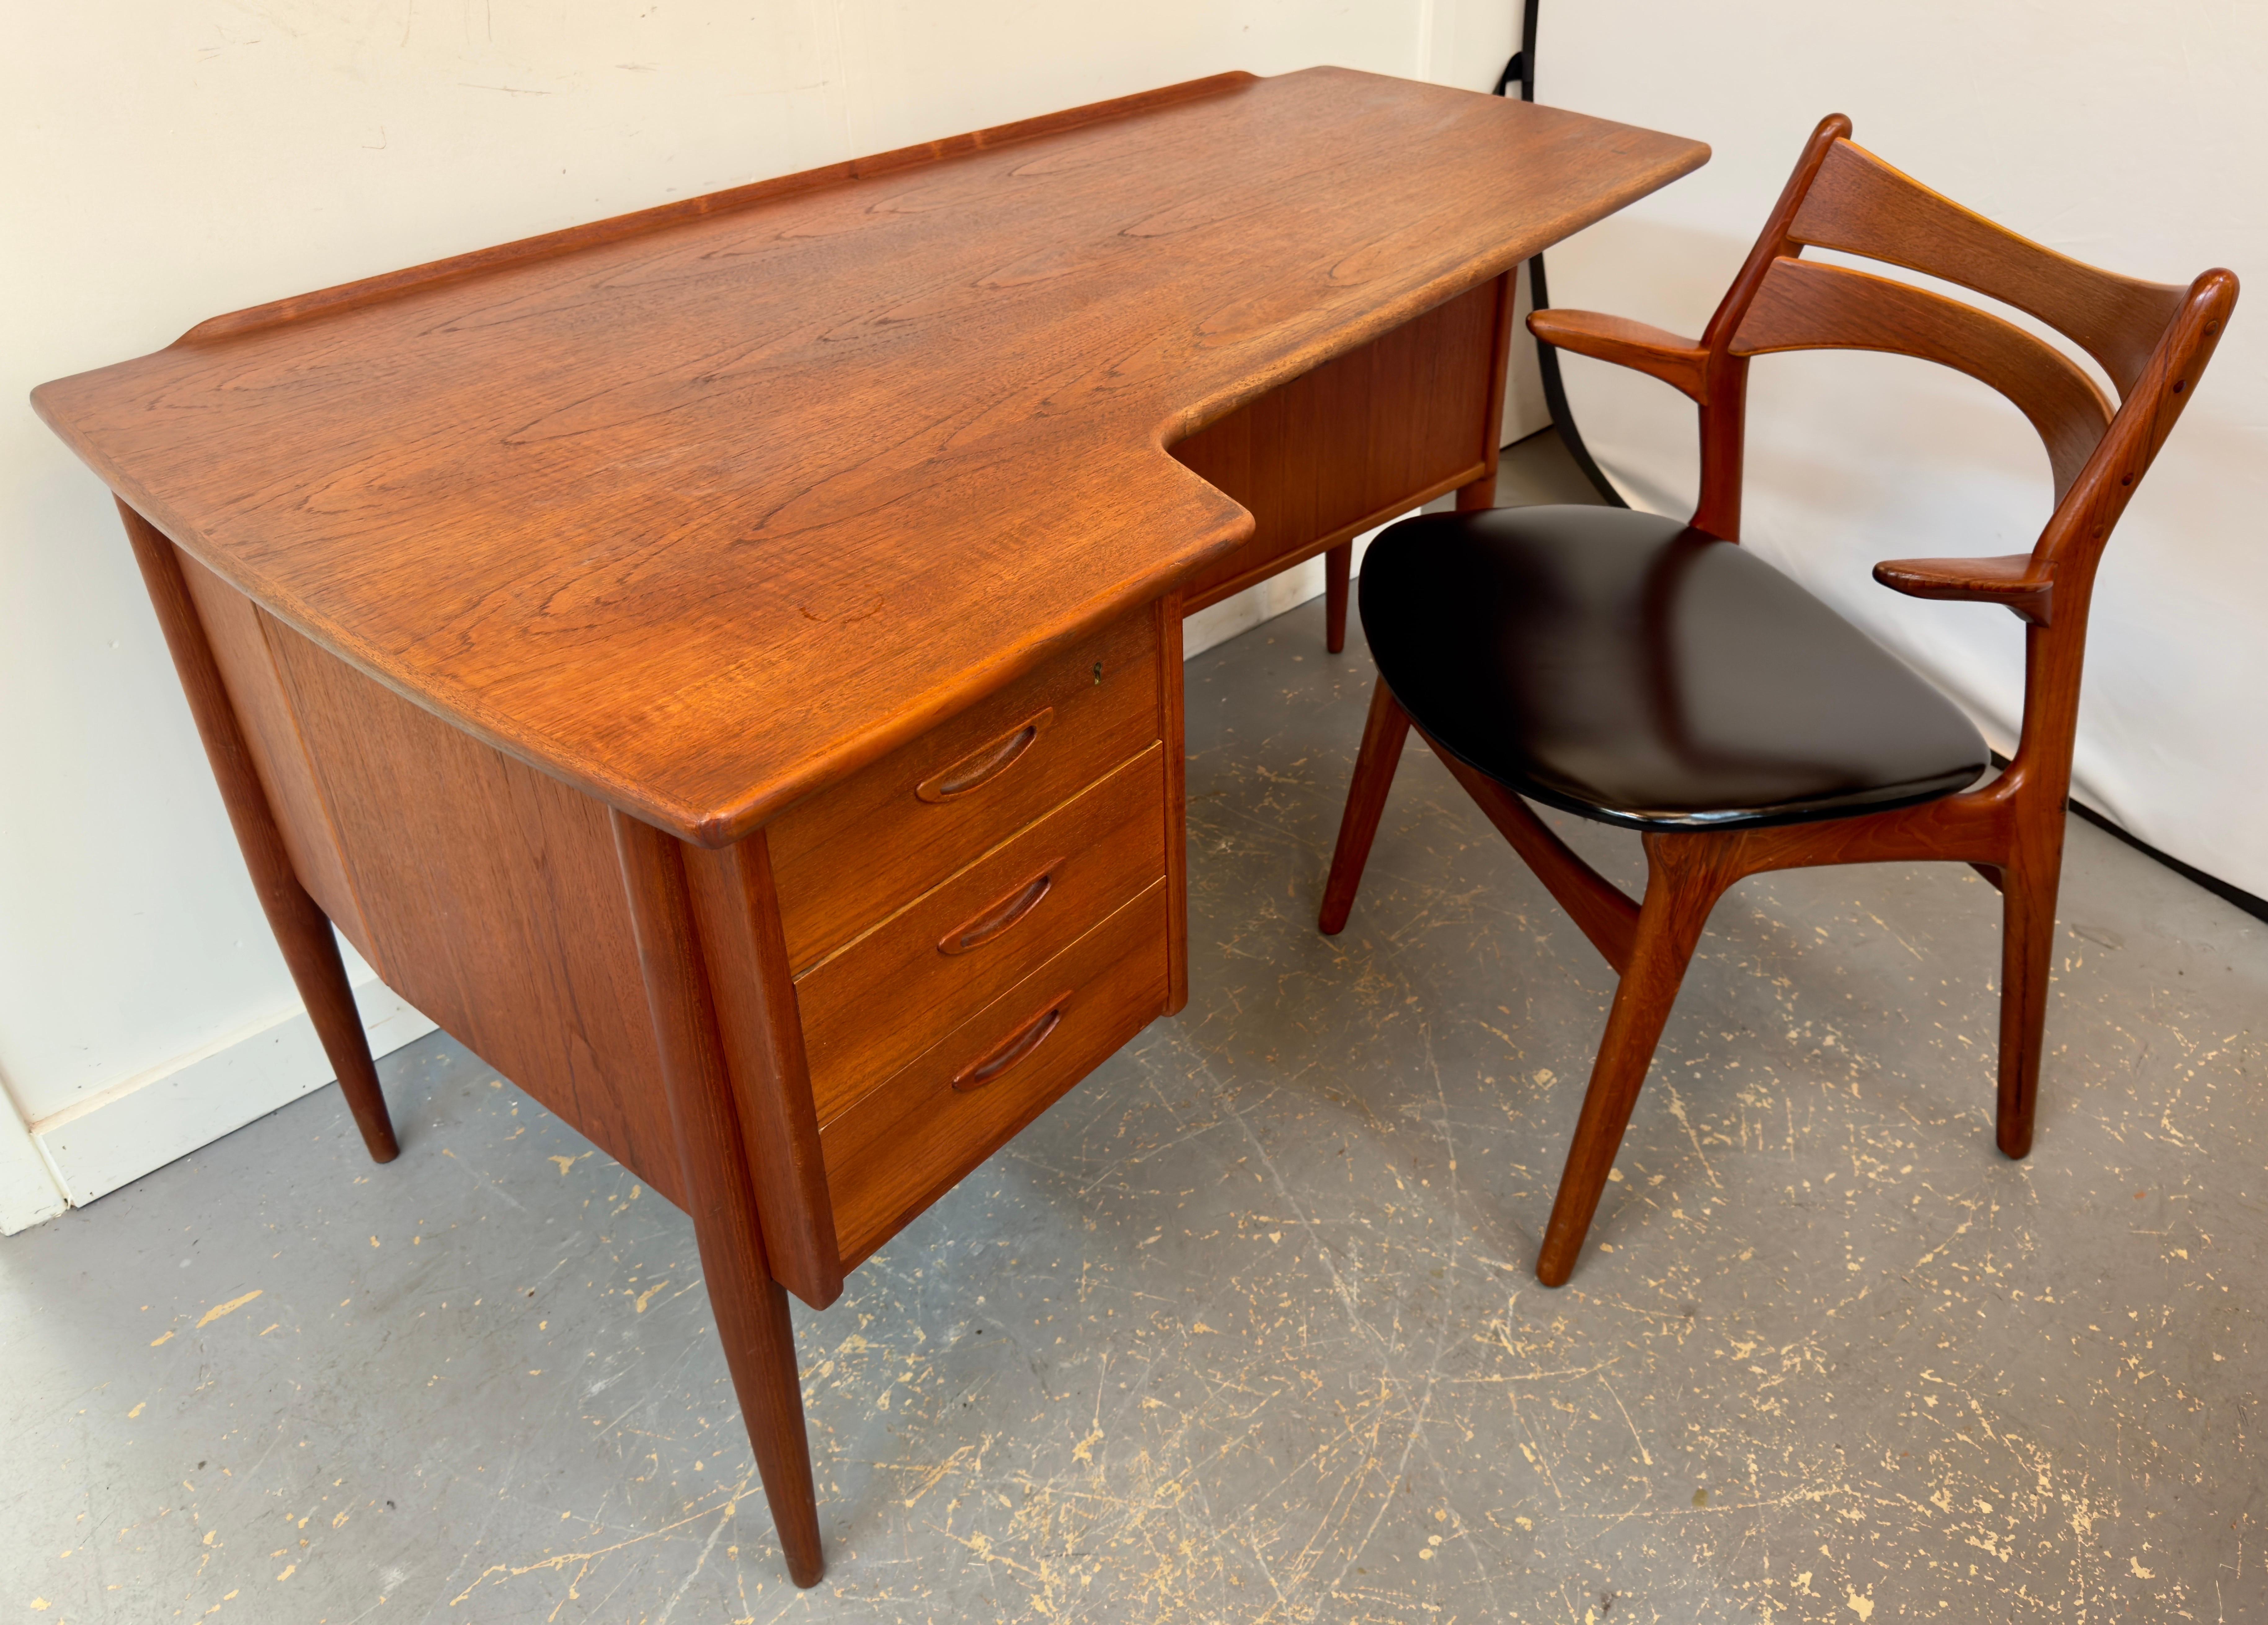 Un bureau de style moderne du milieu du siècle, modèle I.A.10, réalisé de main de maître par Göran Strand pour Lelångs Möbelfabrik, en Suède, dans les années 1960.  
L'attrait du bureau modèle A10 réside dans l'utilisation réfléchie du teck, un bois